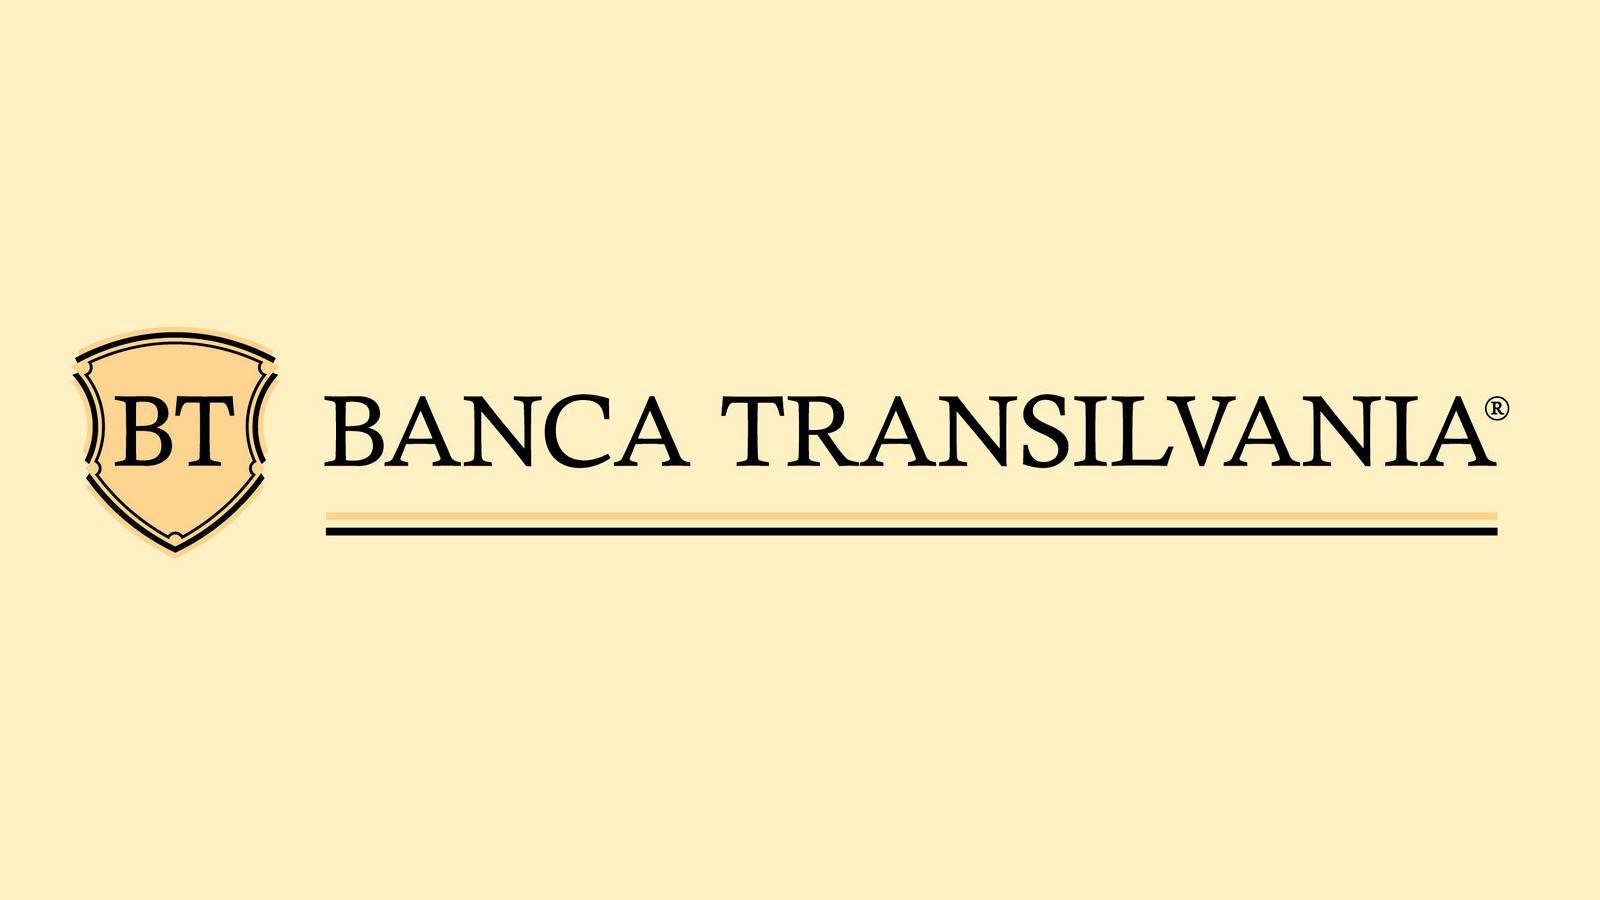 BANCA Transilvania FREE Romani ad right now